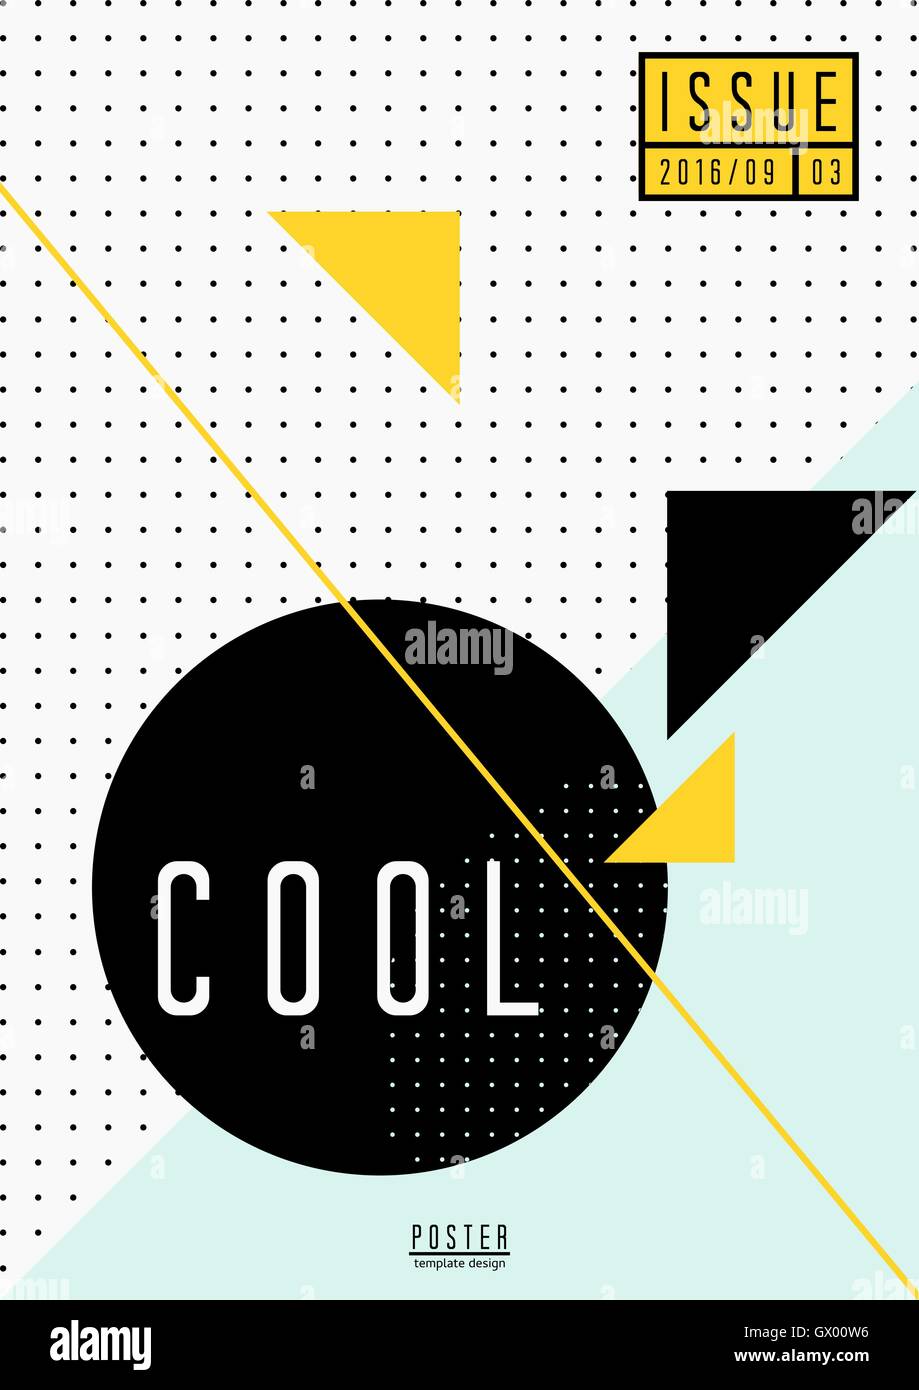 Abstrakte geometrische Muster in schwarz, weiß, hellblau und gelb. Minimalistischen Stil Plakat, Broschüre, Magazin-Cover-Design. Stock Vektor